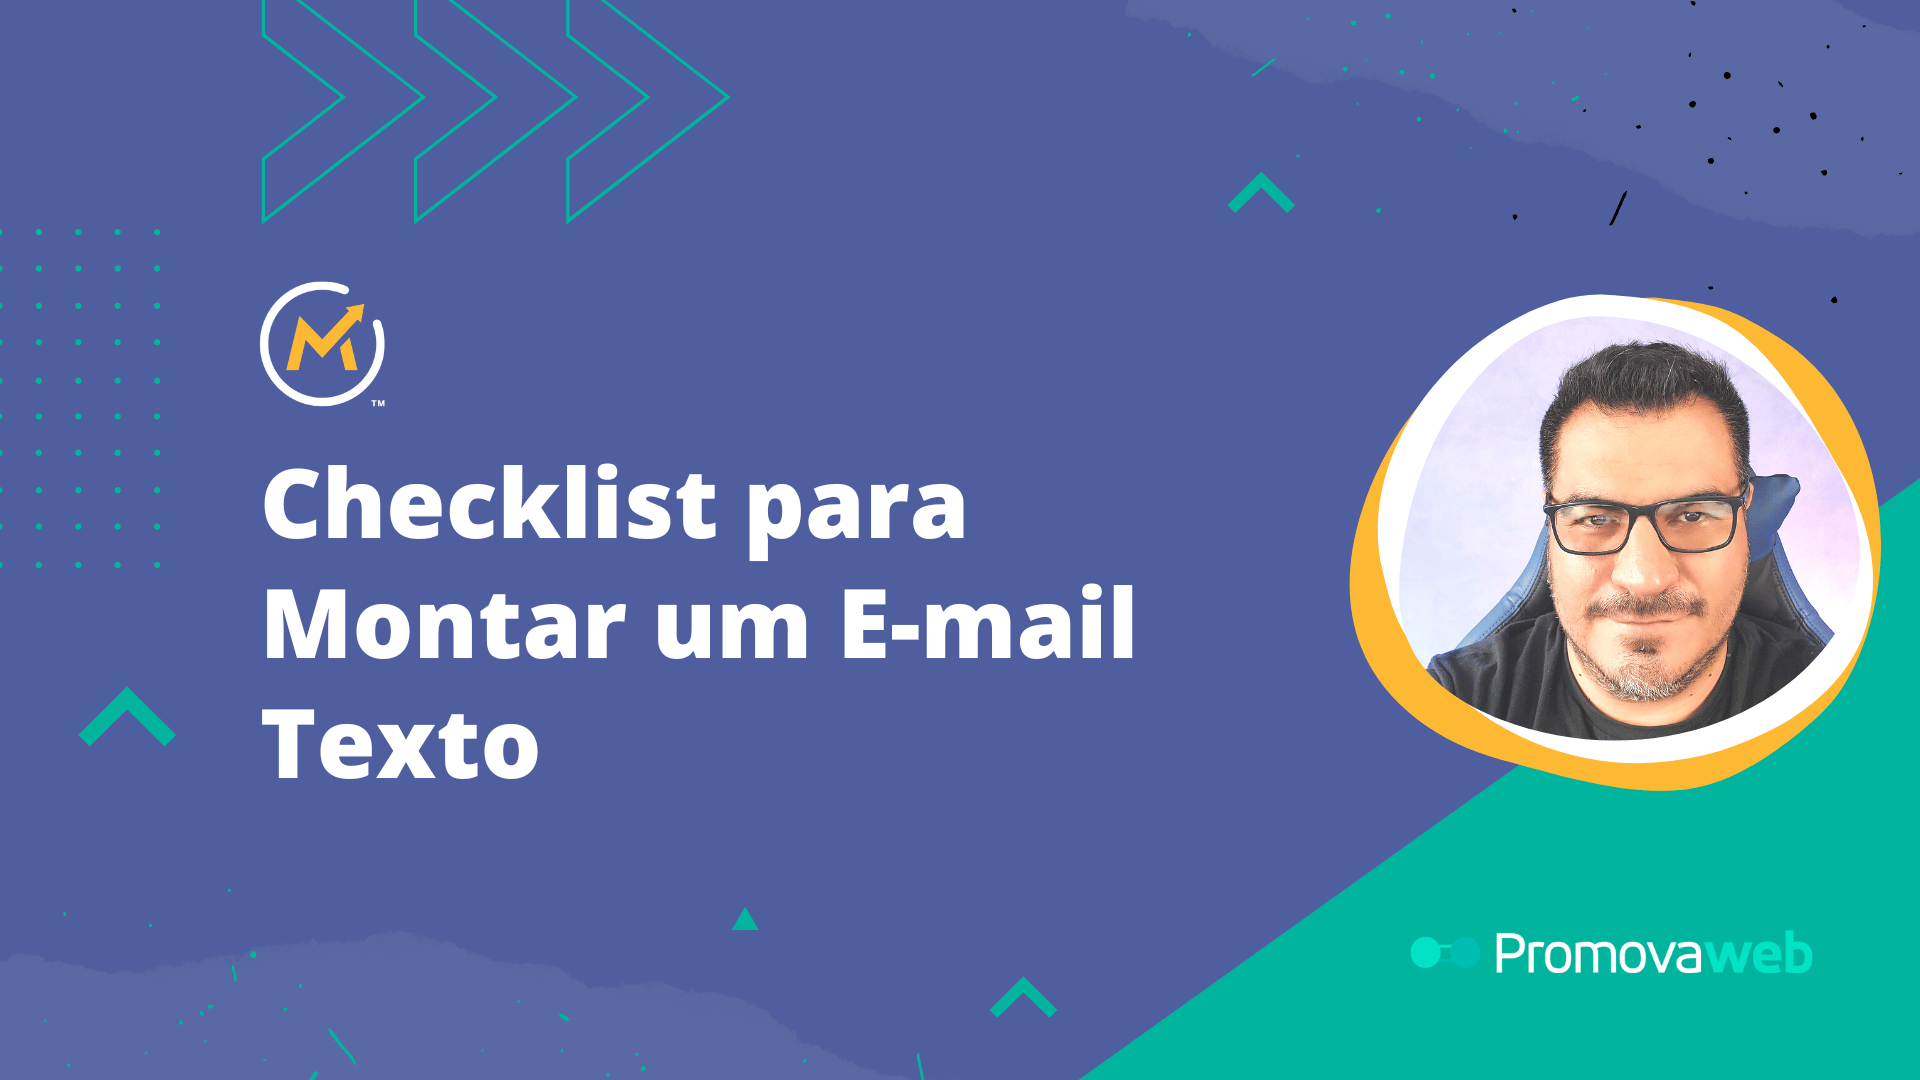 Checklist para Montar um E-mail Texto